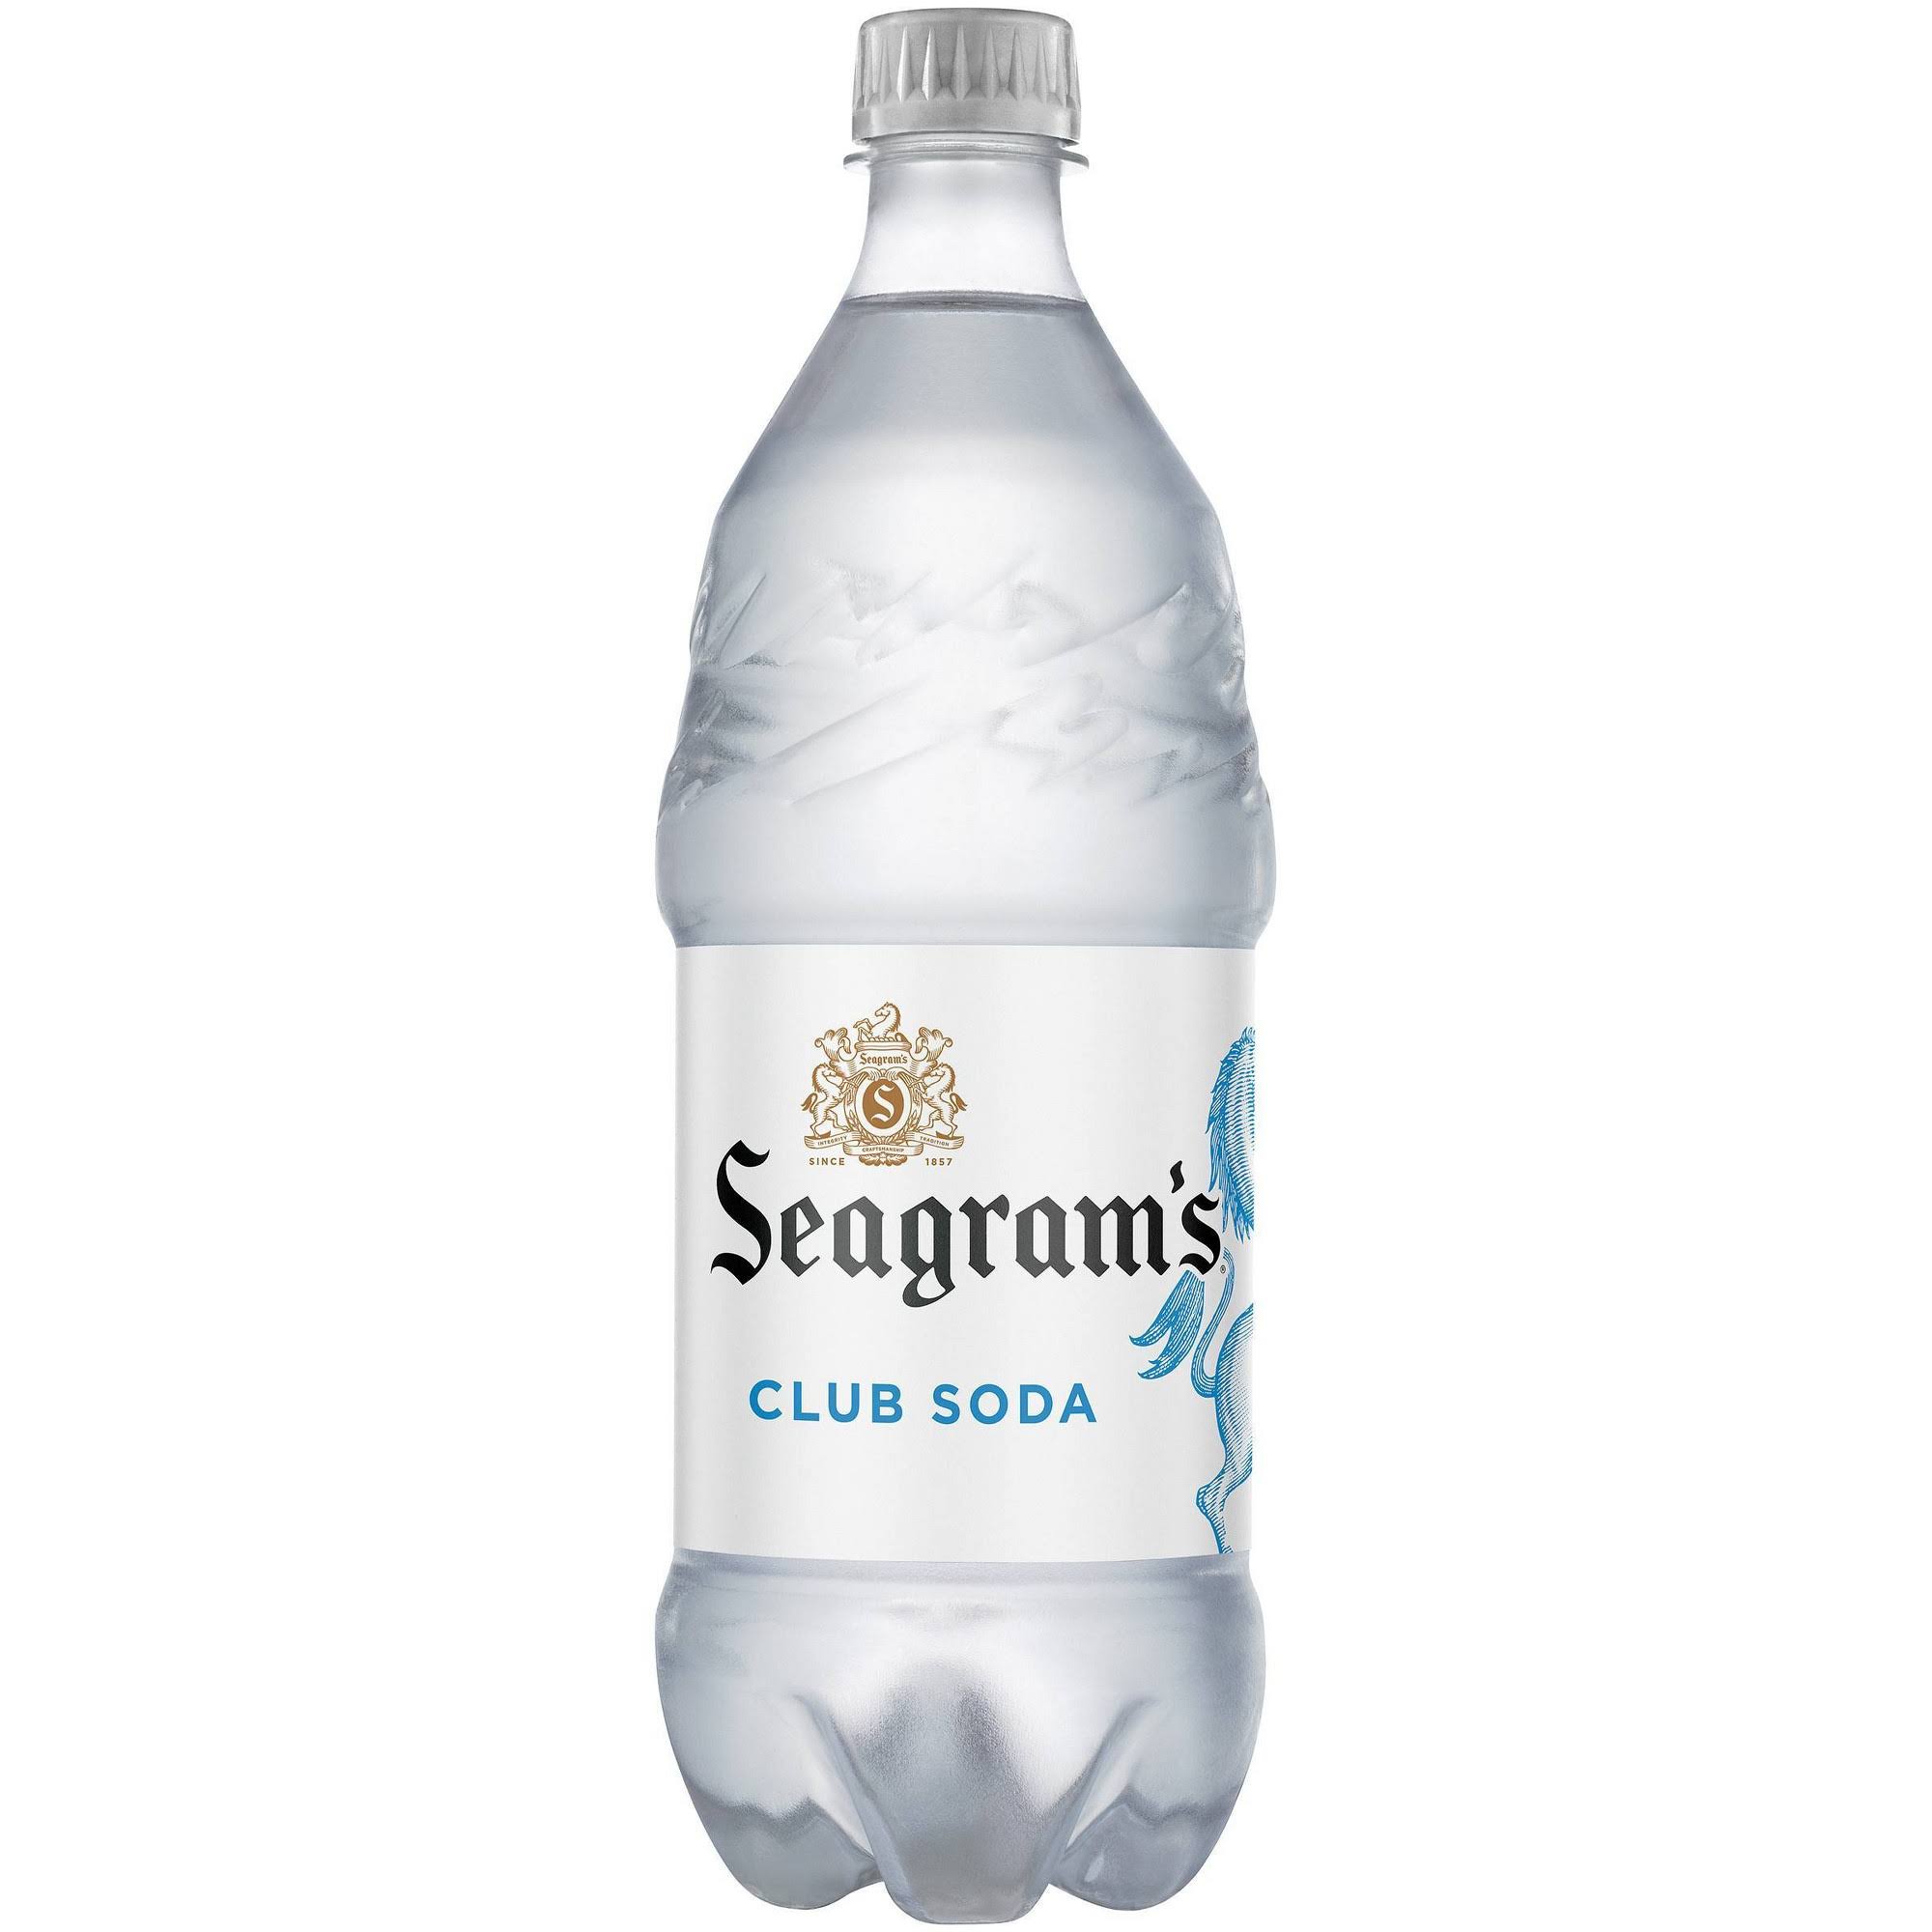 Seagram's Club Soda